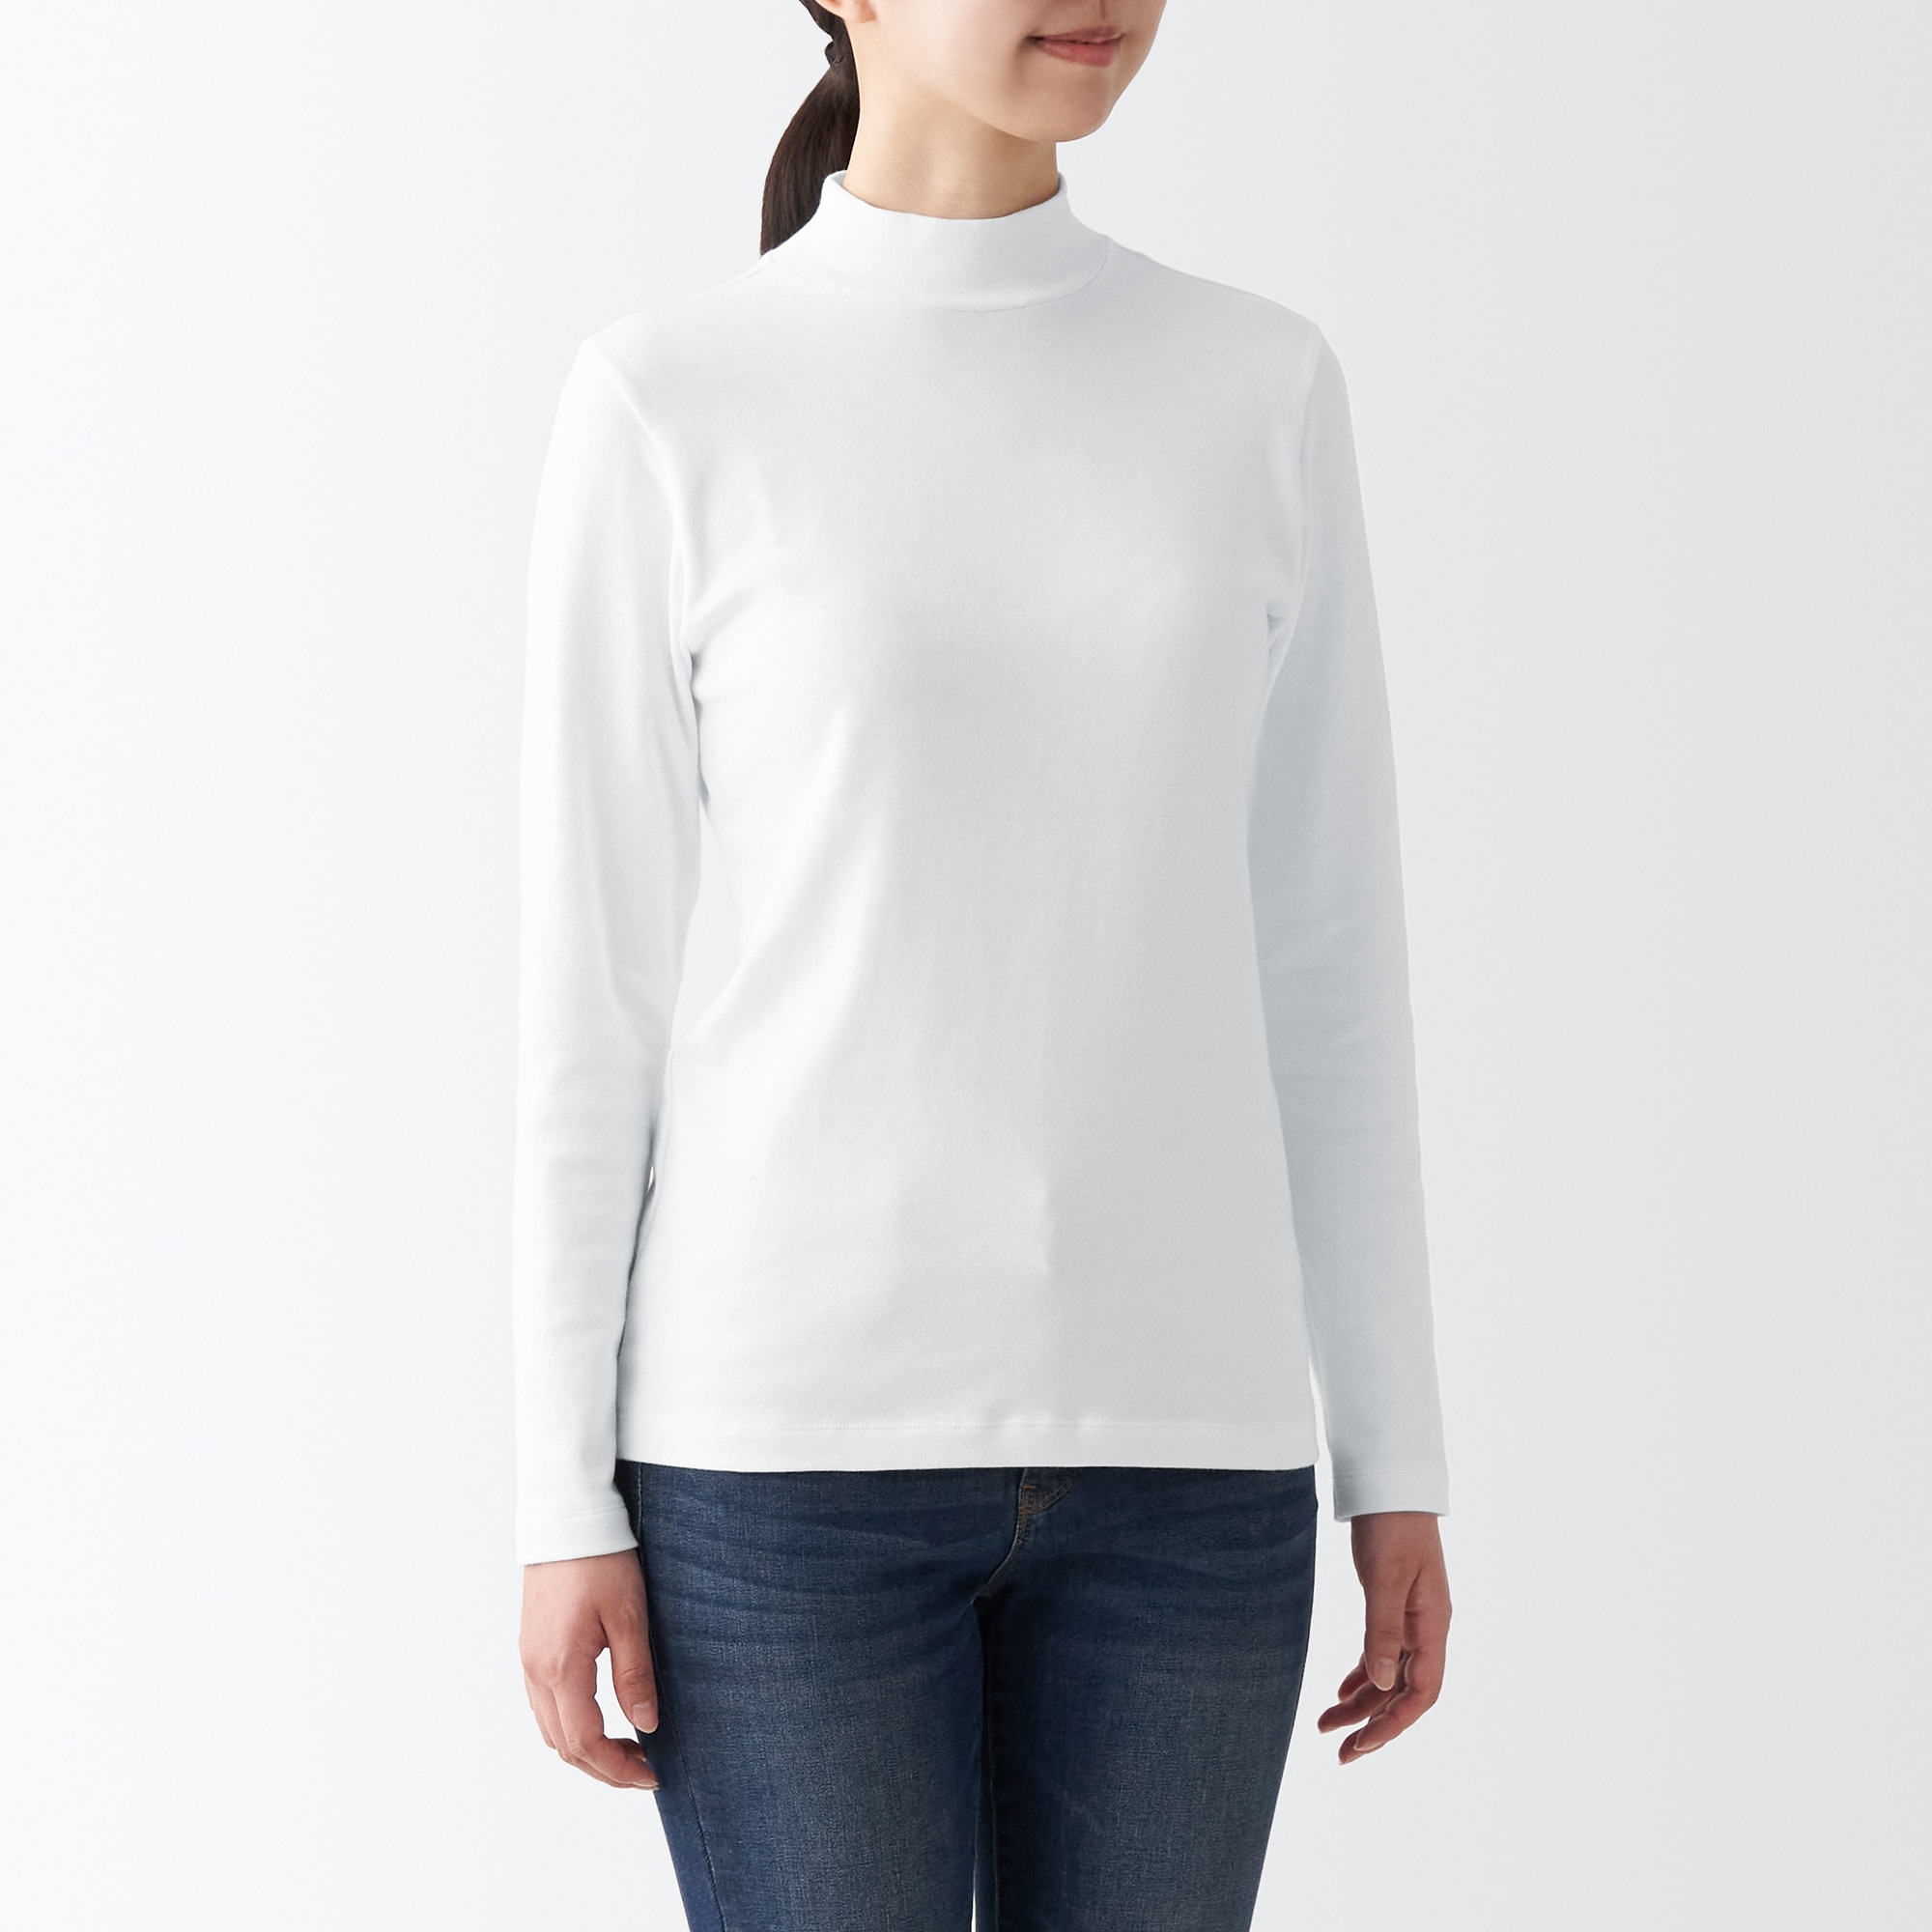 무인양품 일본 스트레칭 서큘러 니트 하이넥긴소매티셔츠